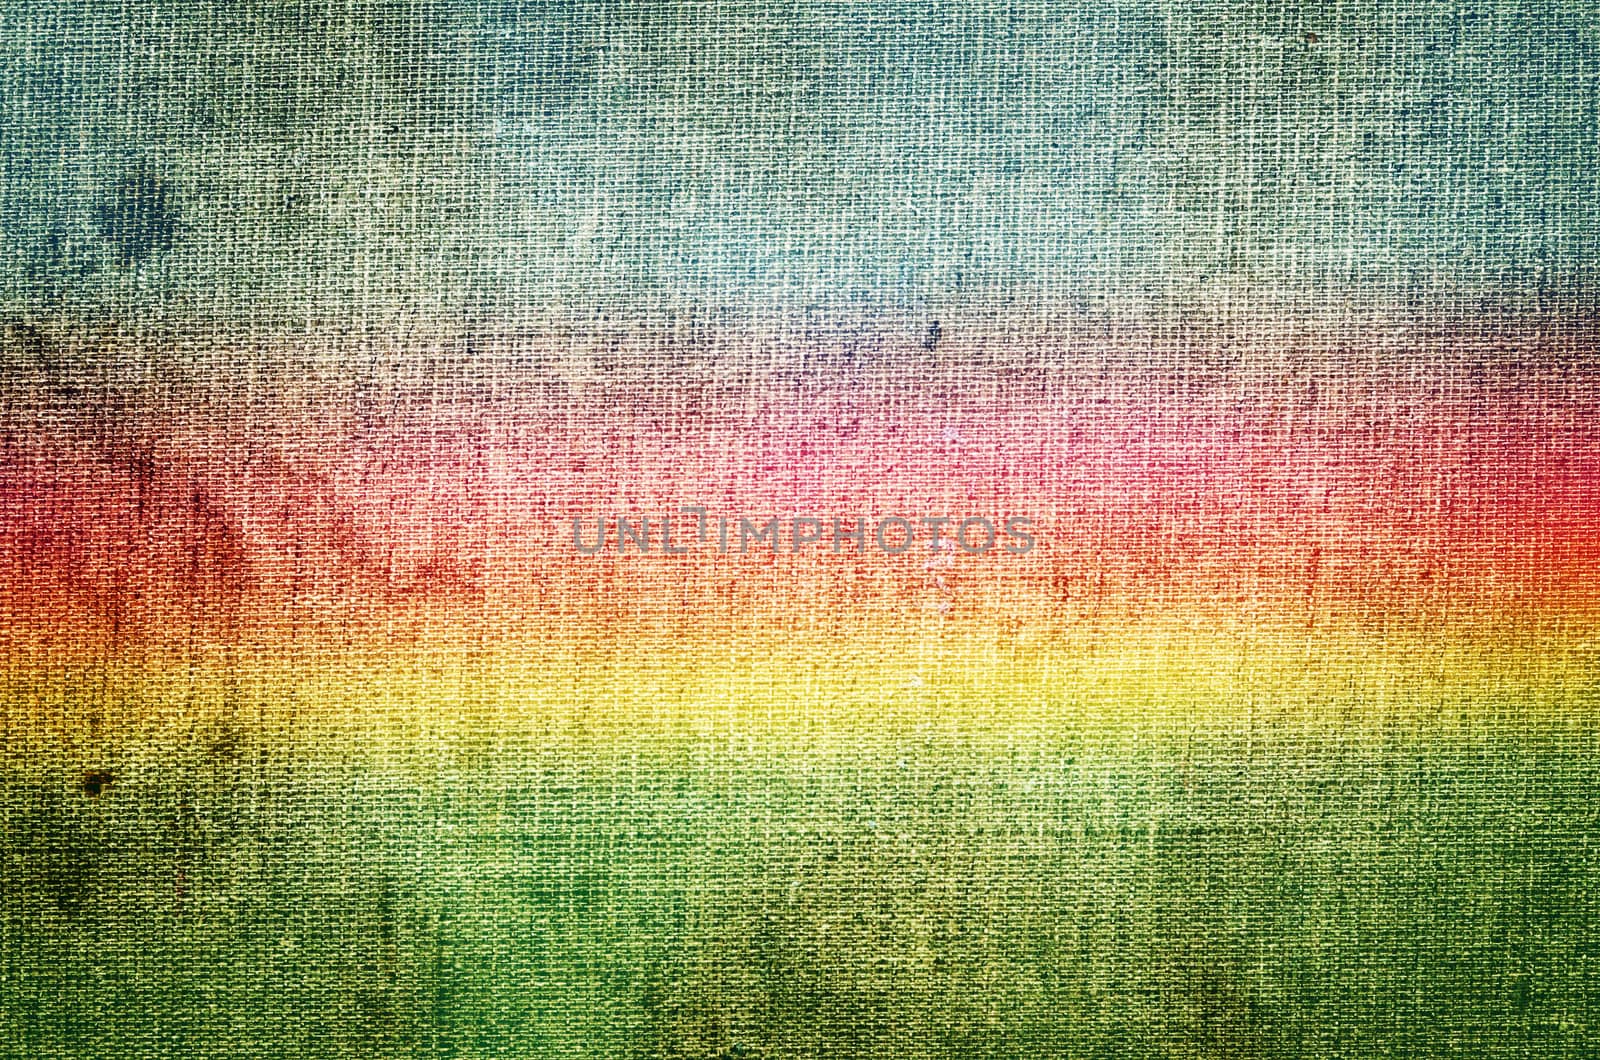 grunge rainbow background by sarkao